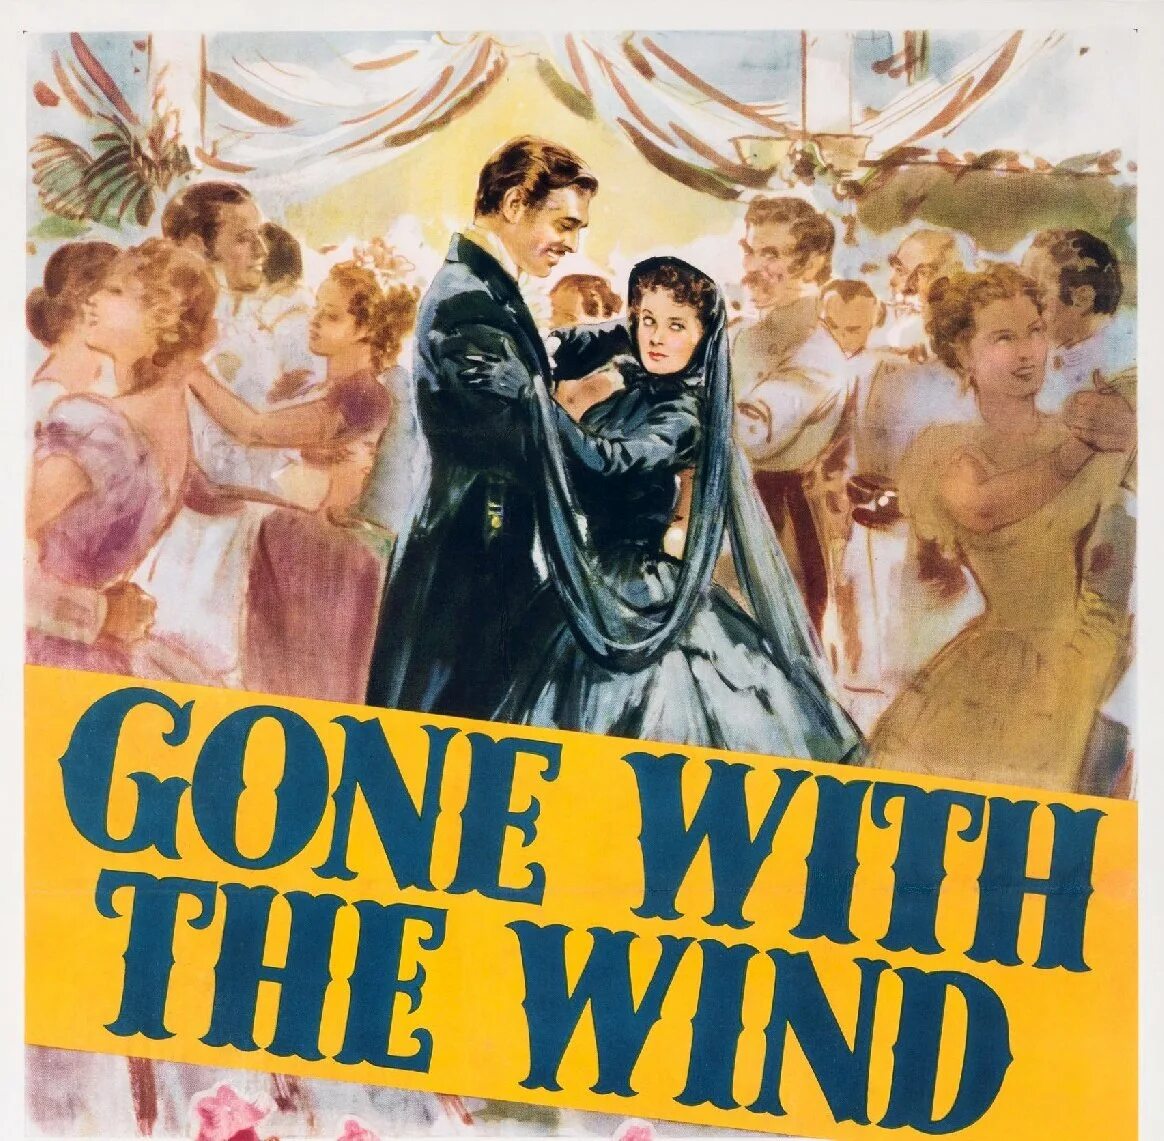 Унесенные ветром на английском. Унесенные ветром 1939 Постер. Унесенные ветром плакат. Унесенные ветром Постер.